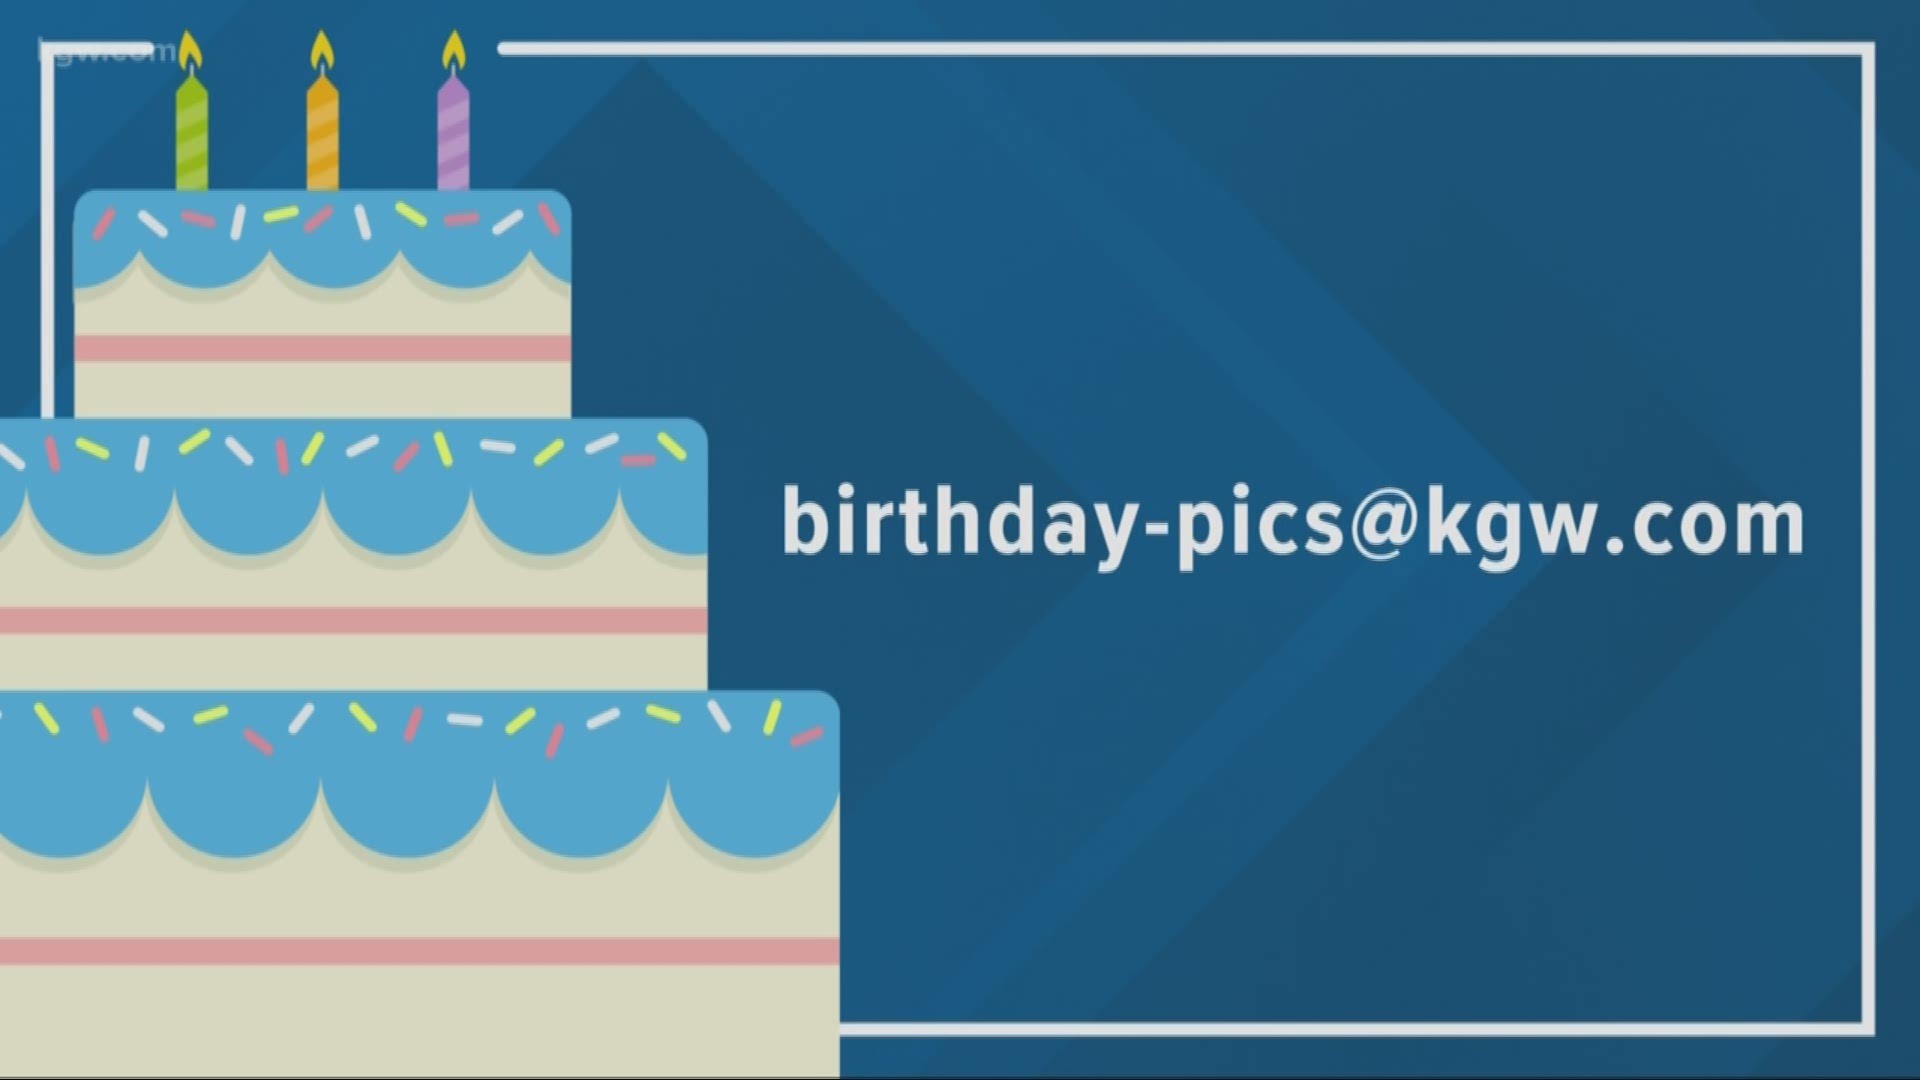 KGW viewer birthdays: 9-17-19